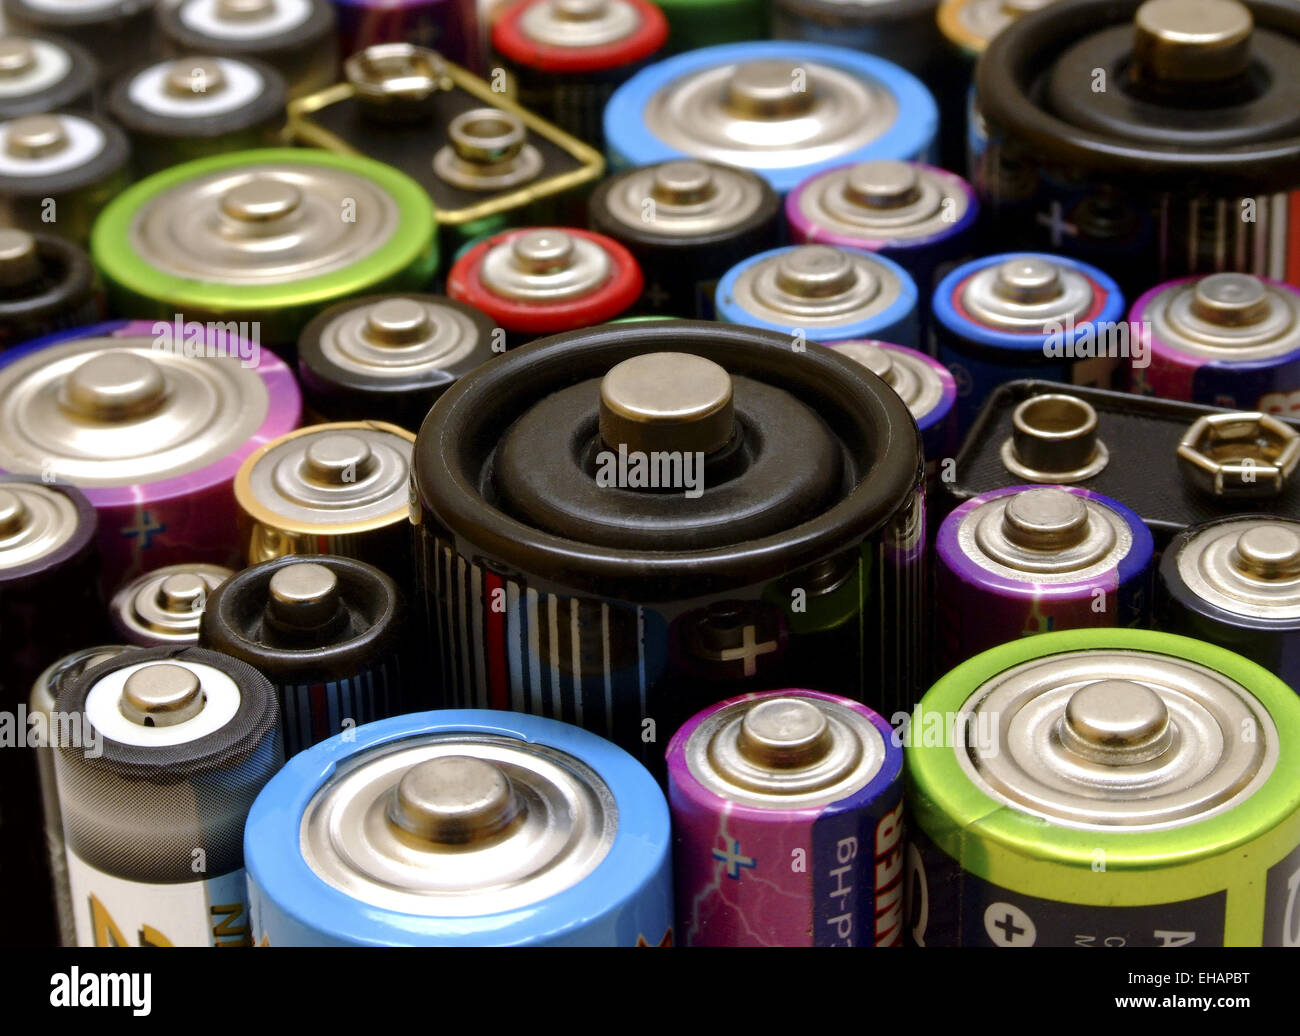 Batterien / batteries Banque D'Images